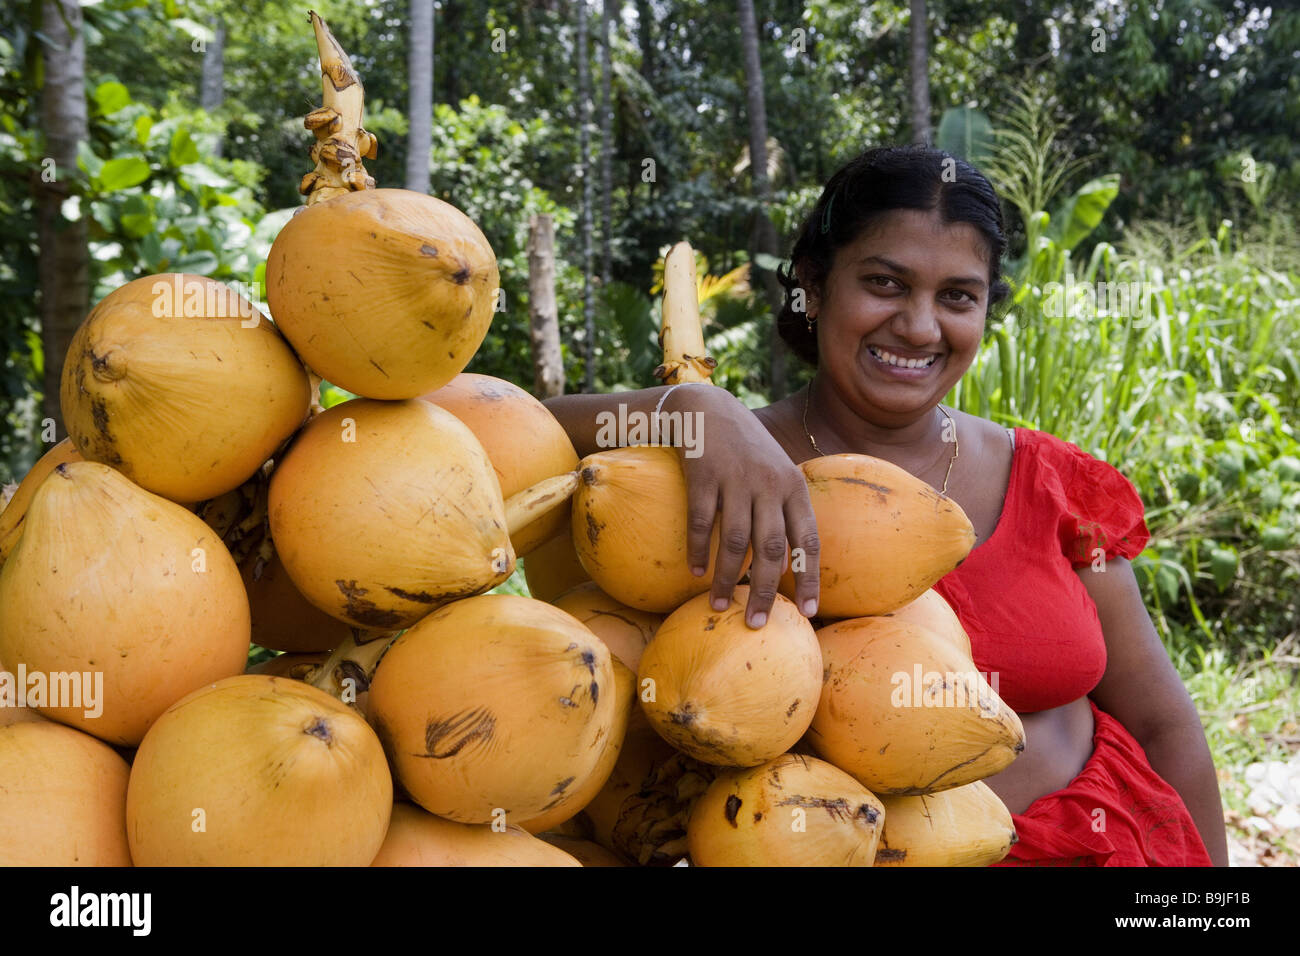 Sri Lanka Colombo Eingeborenen Verkauf Kokosnüsse Südost-Asien Asien Insel Menschen Frau dunkelhäutigen lächelnd stand Obst Wirtschaft bietet wohnen Stockfoto